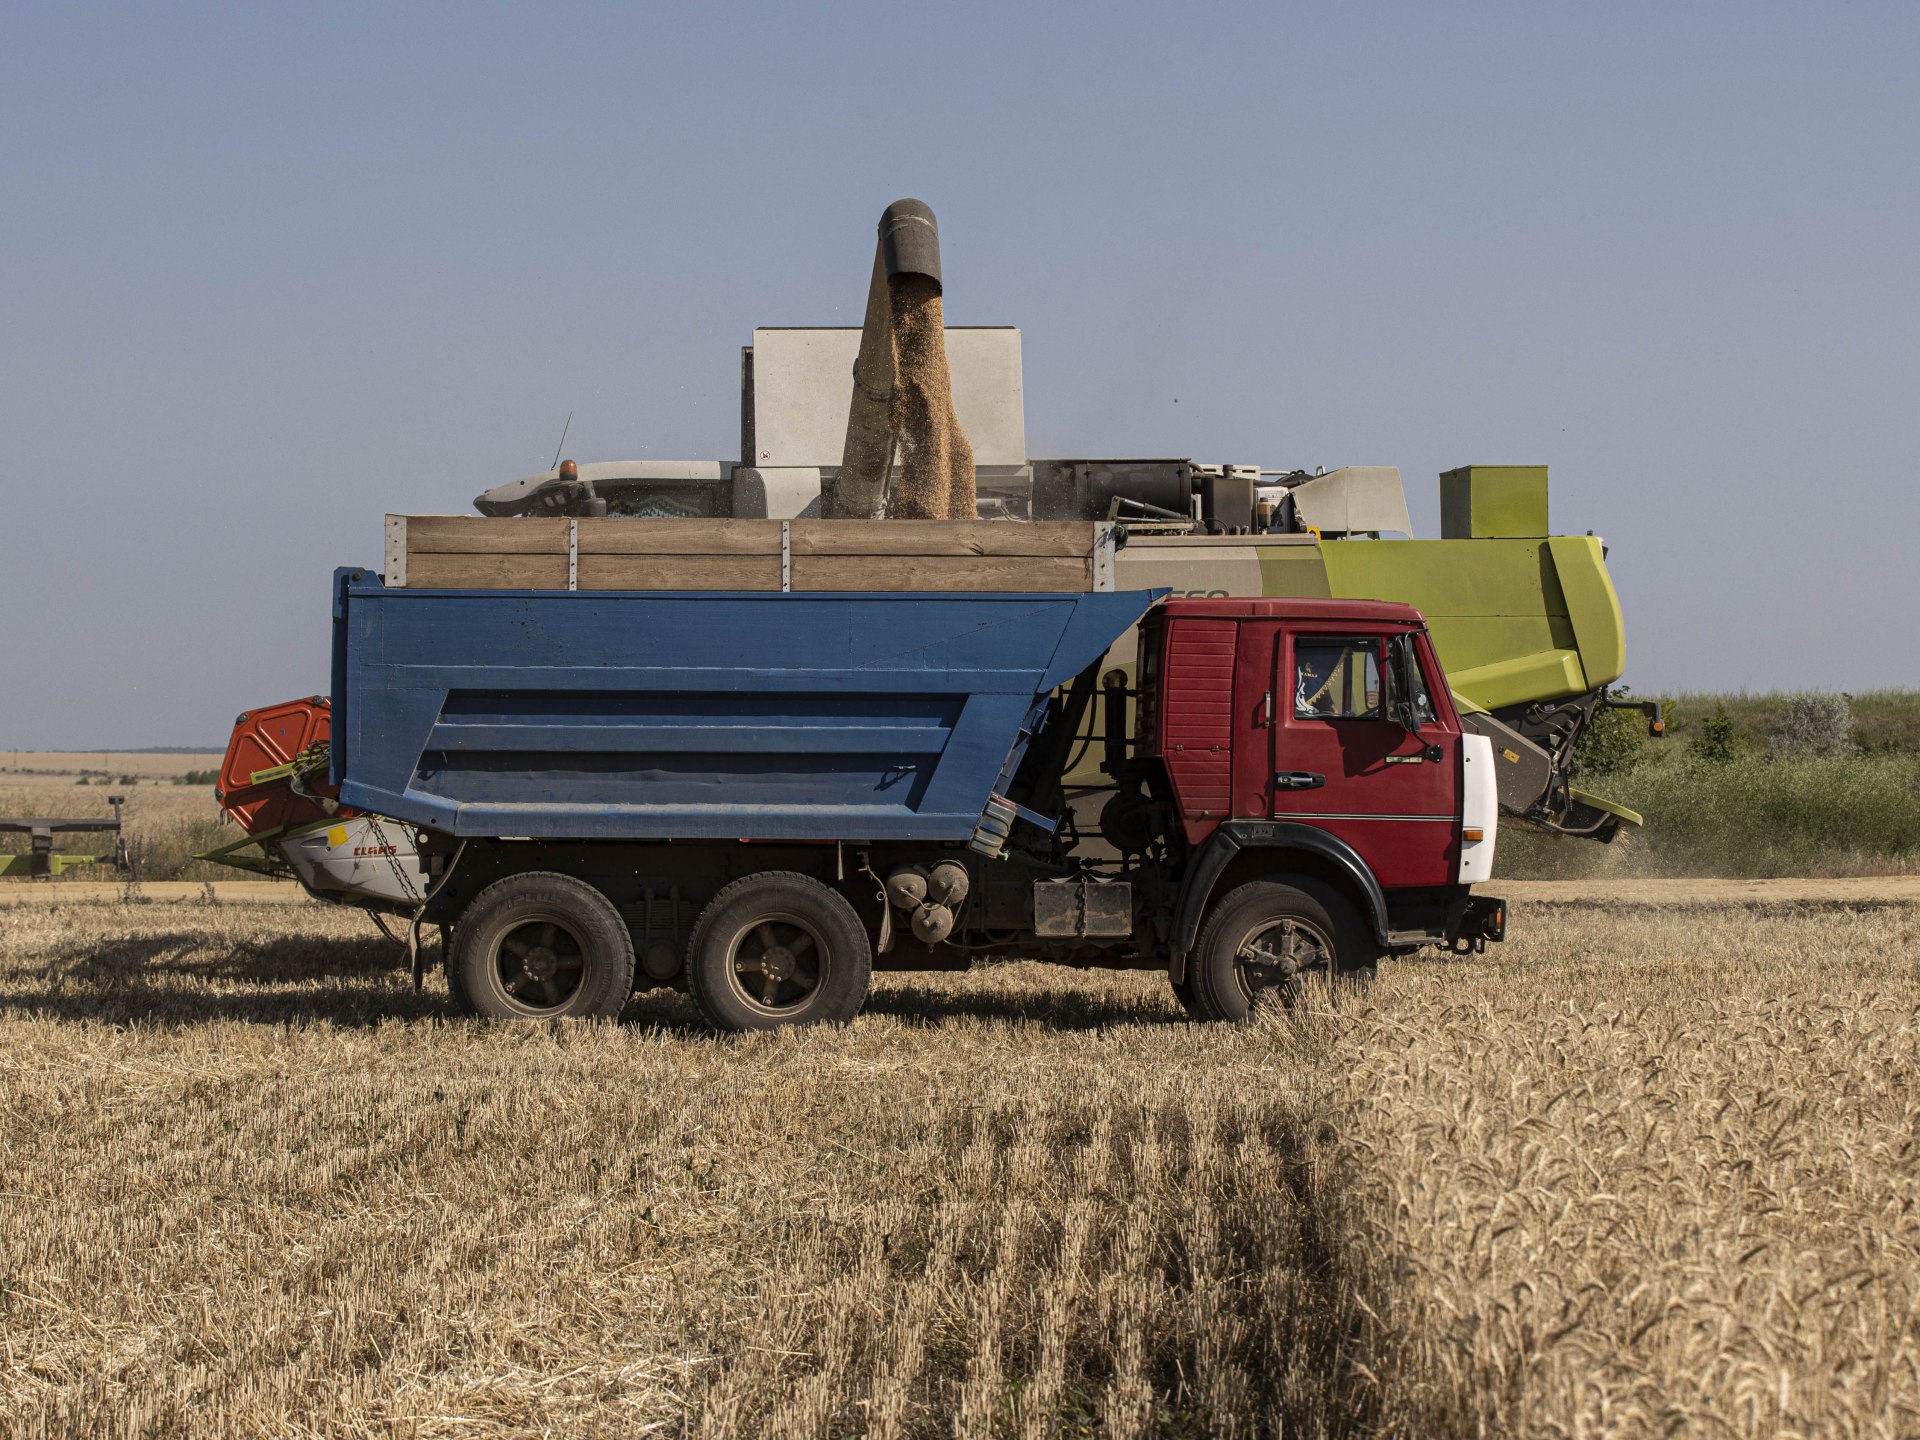 كل ما تريد معرفته عن إنتاج أوكرانيا الزراعي وخلافاتها مع الأوروبيين | اقتصاد – البوكس نيوز